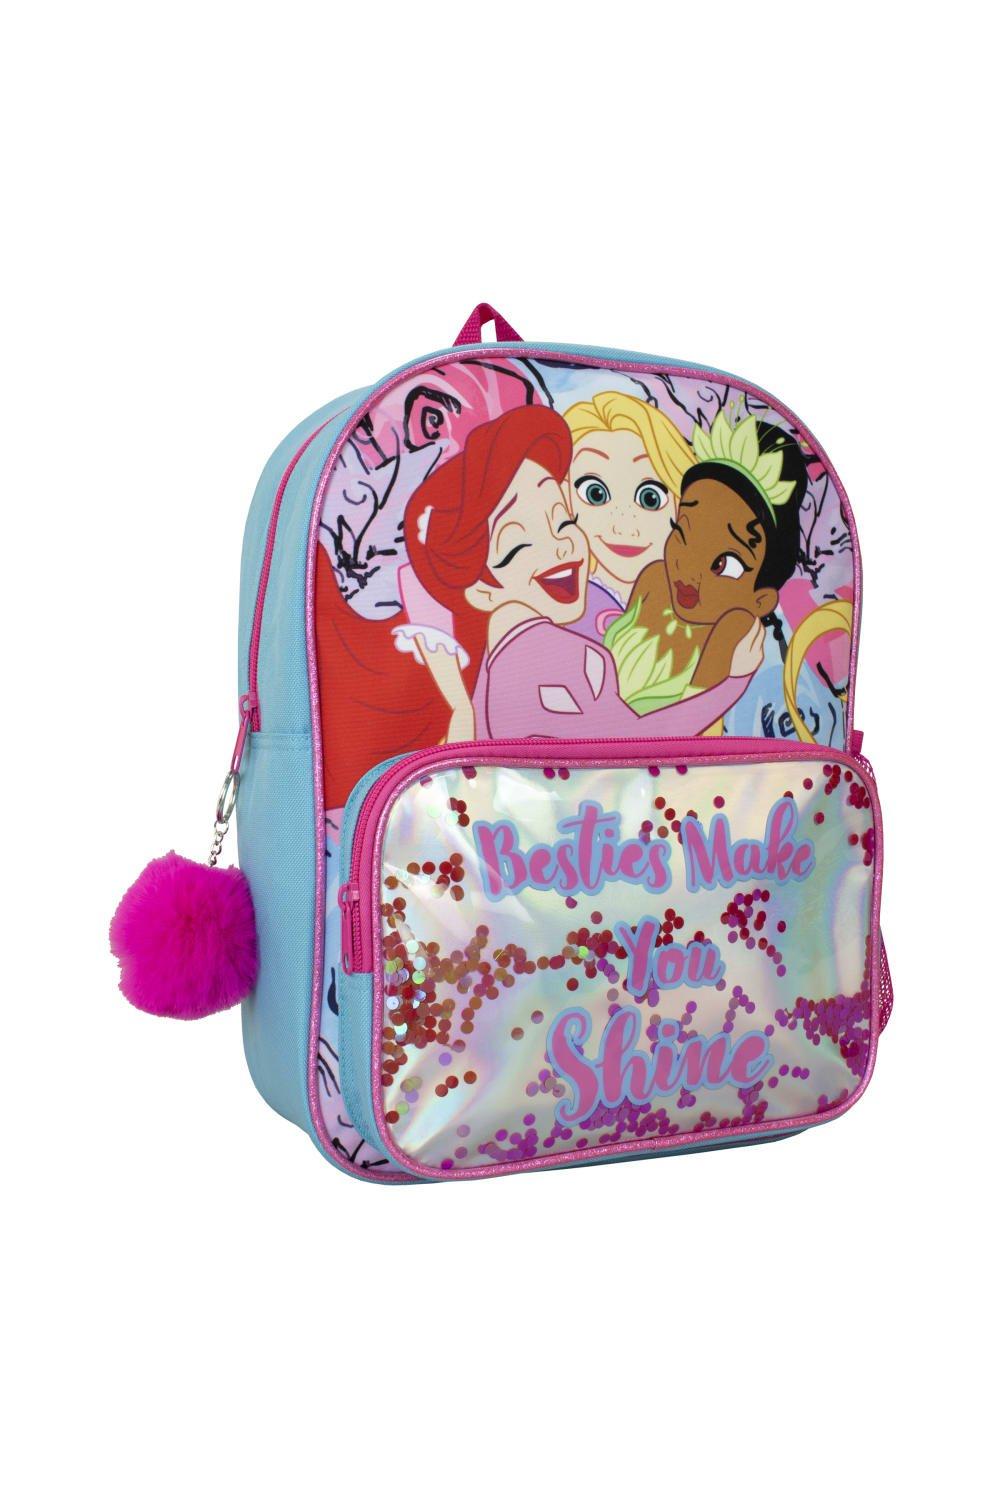 Рюкзак принцессы с помпоном с изображением Ариэль Рапунцель и Тианы Disney, синий сумка принцесса лягушка красный